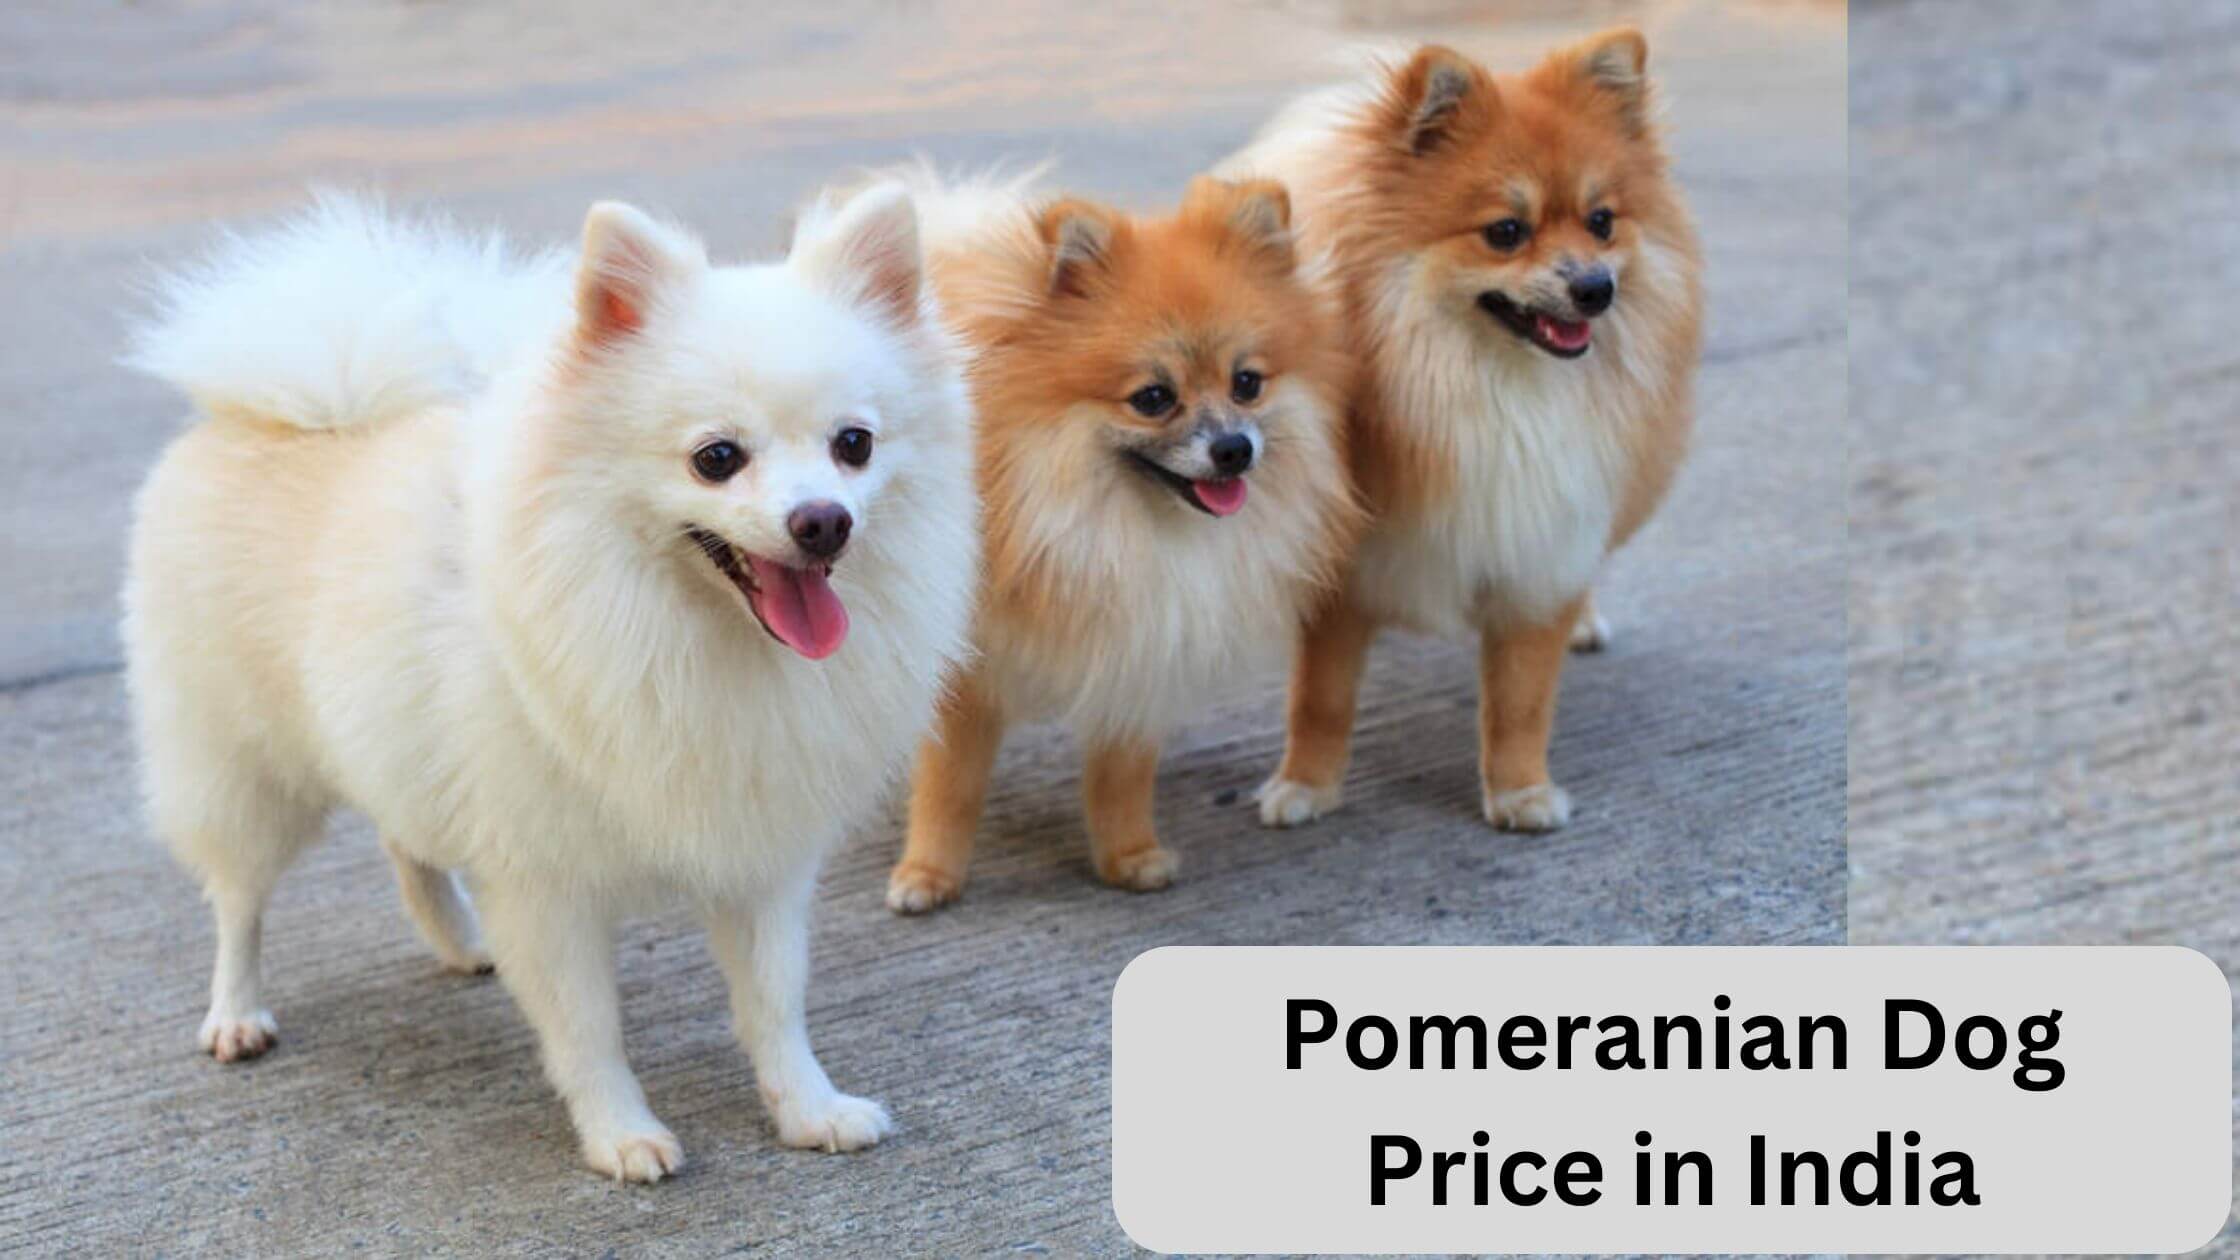 Pomeranian dog price in India